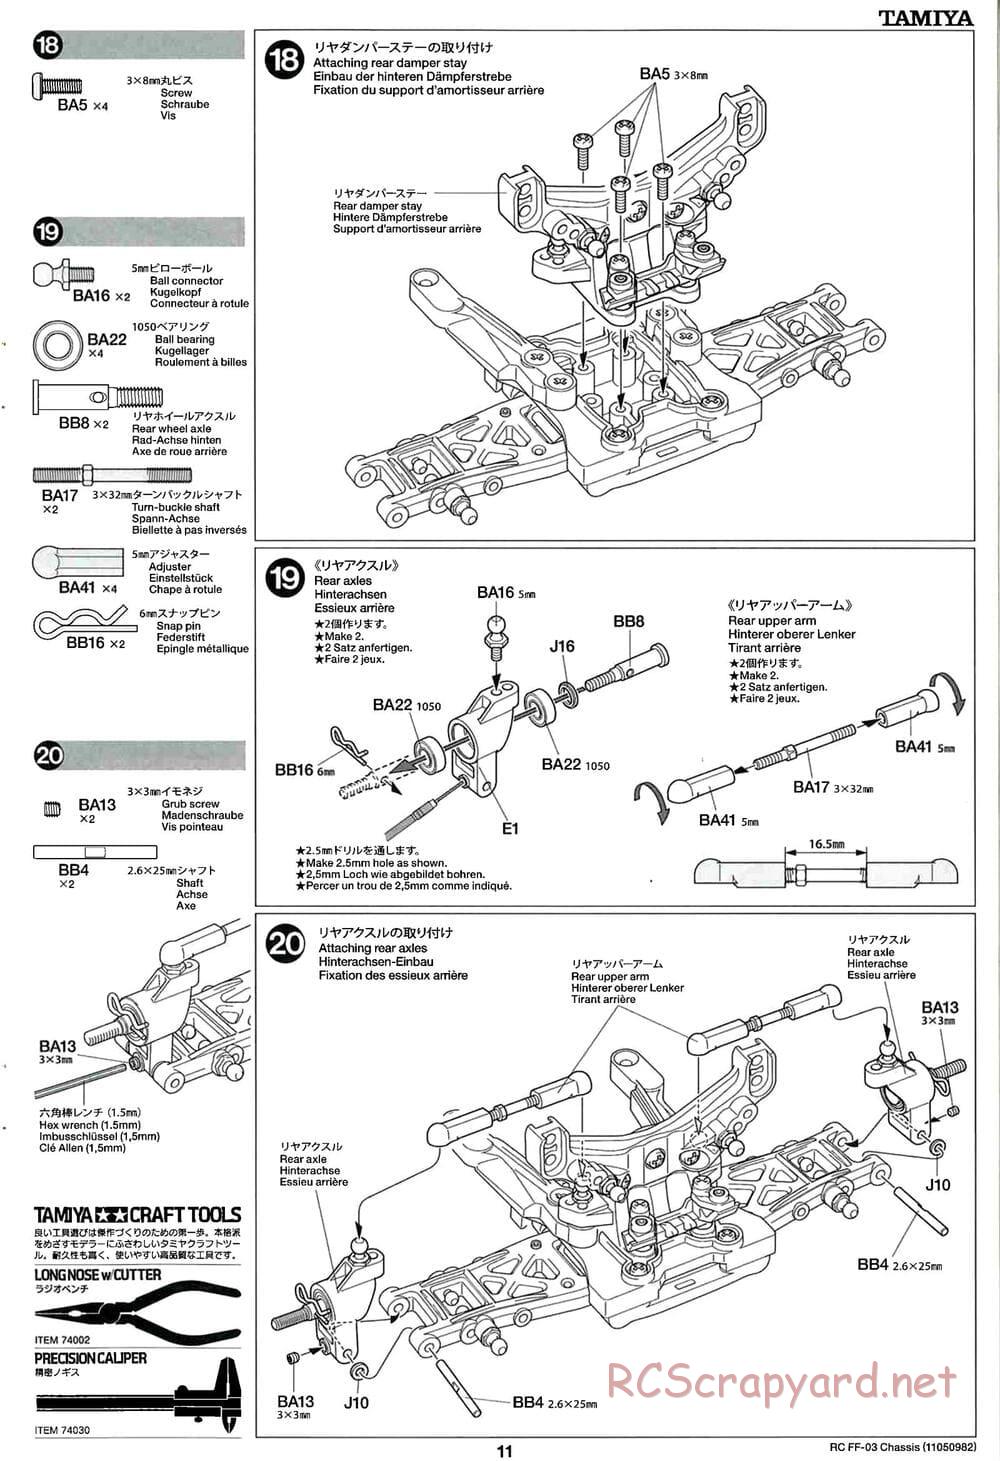 Tamiya - Castrol Honda Civic VTi - FF-03 Chassis - Manual - Page 11